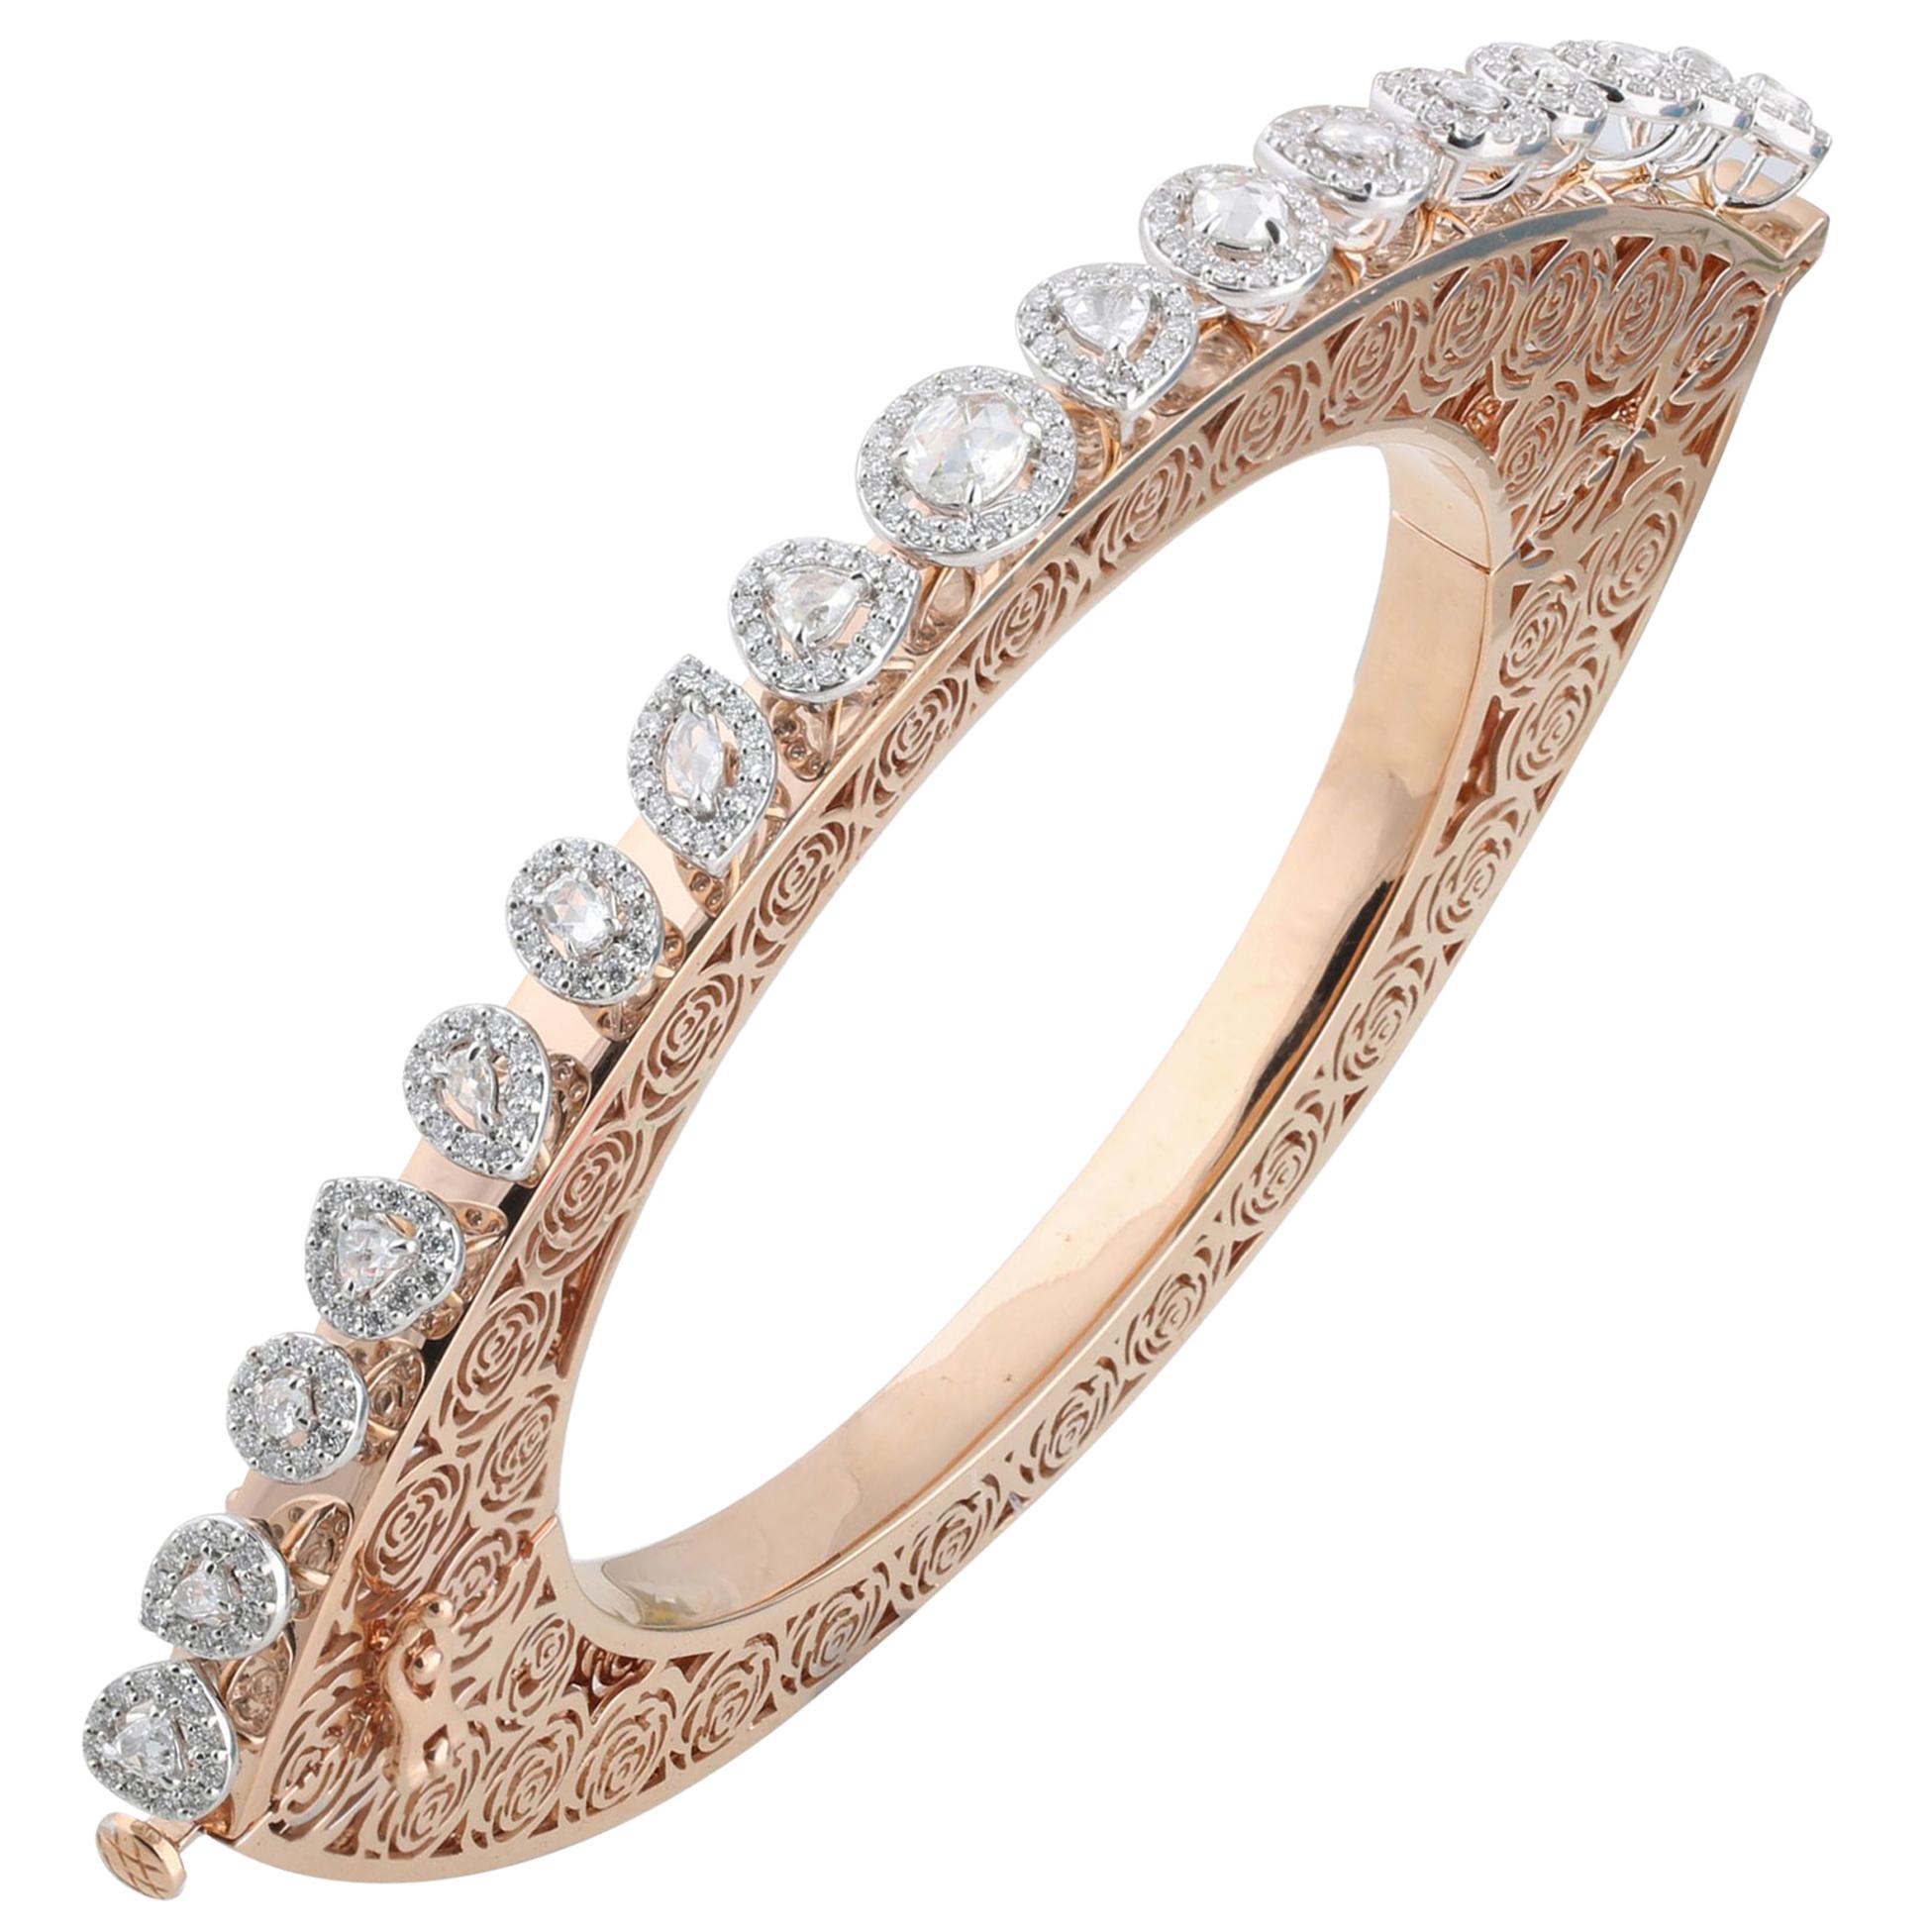 Studio Rêves Diamonds and Filigree Bracelet in 18 Karat Gold In New Condition For Sale In Mumbai, Maharashtra